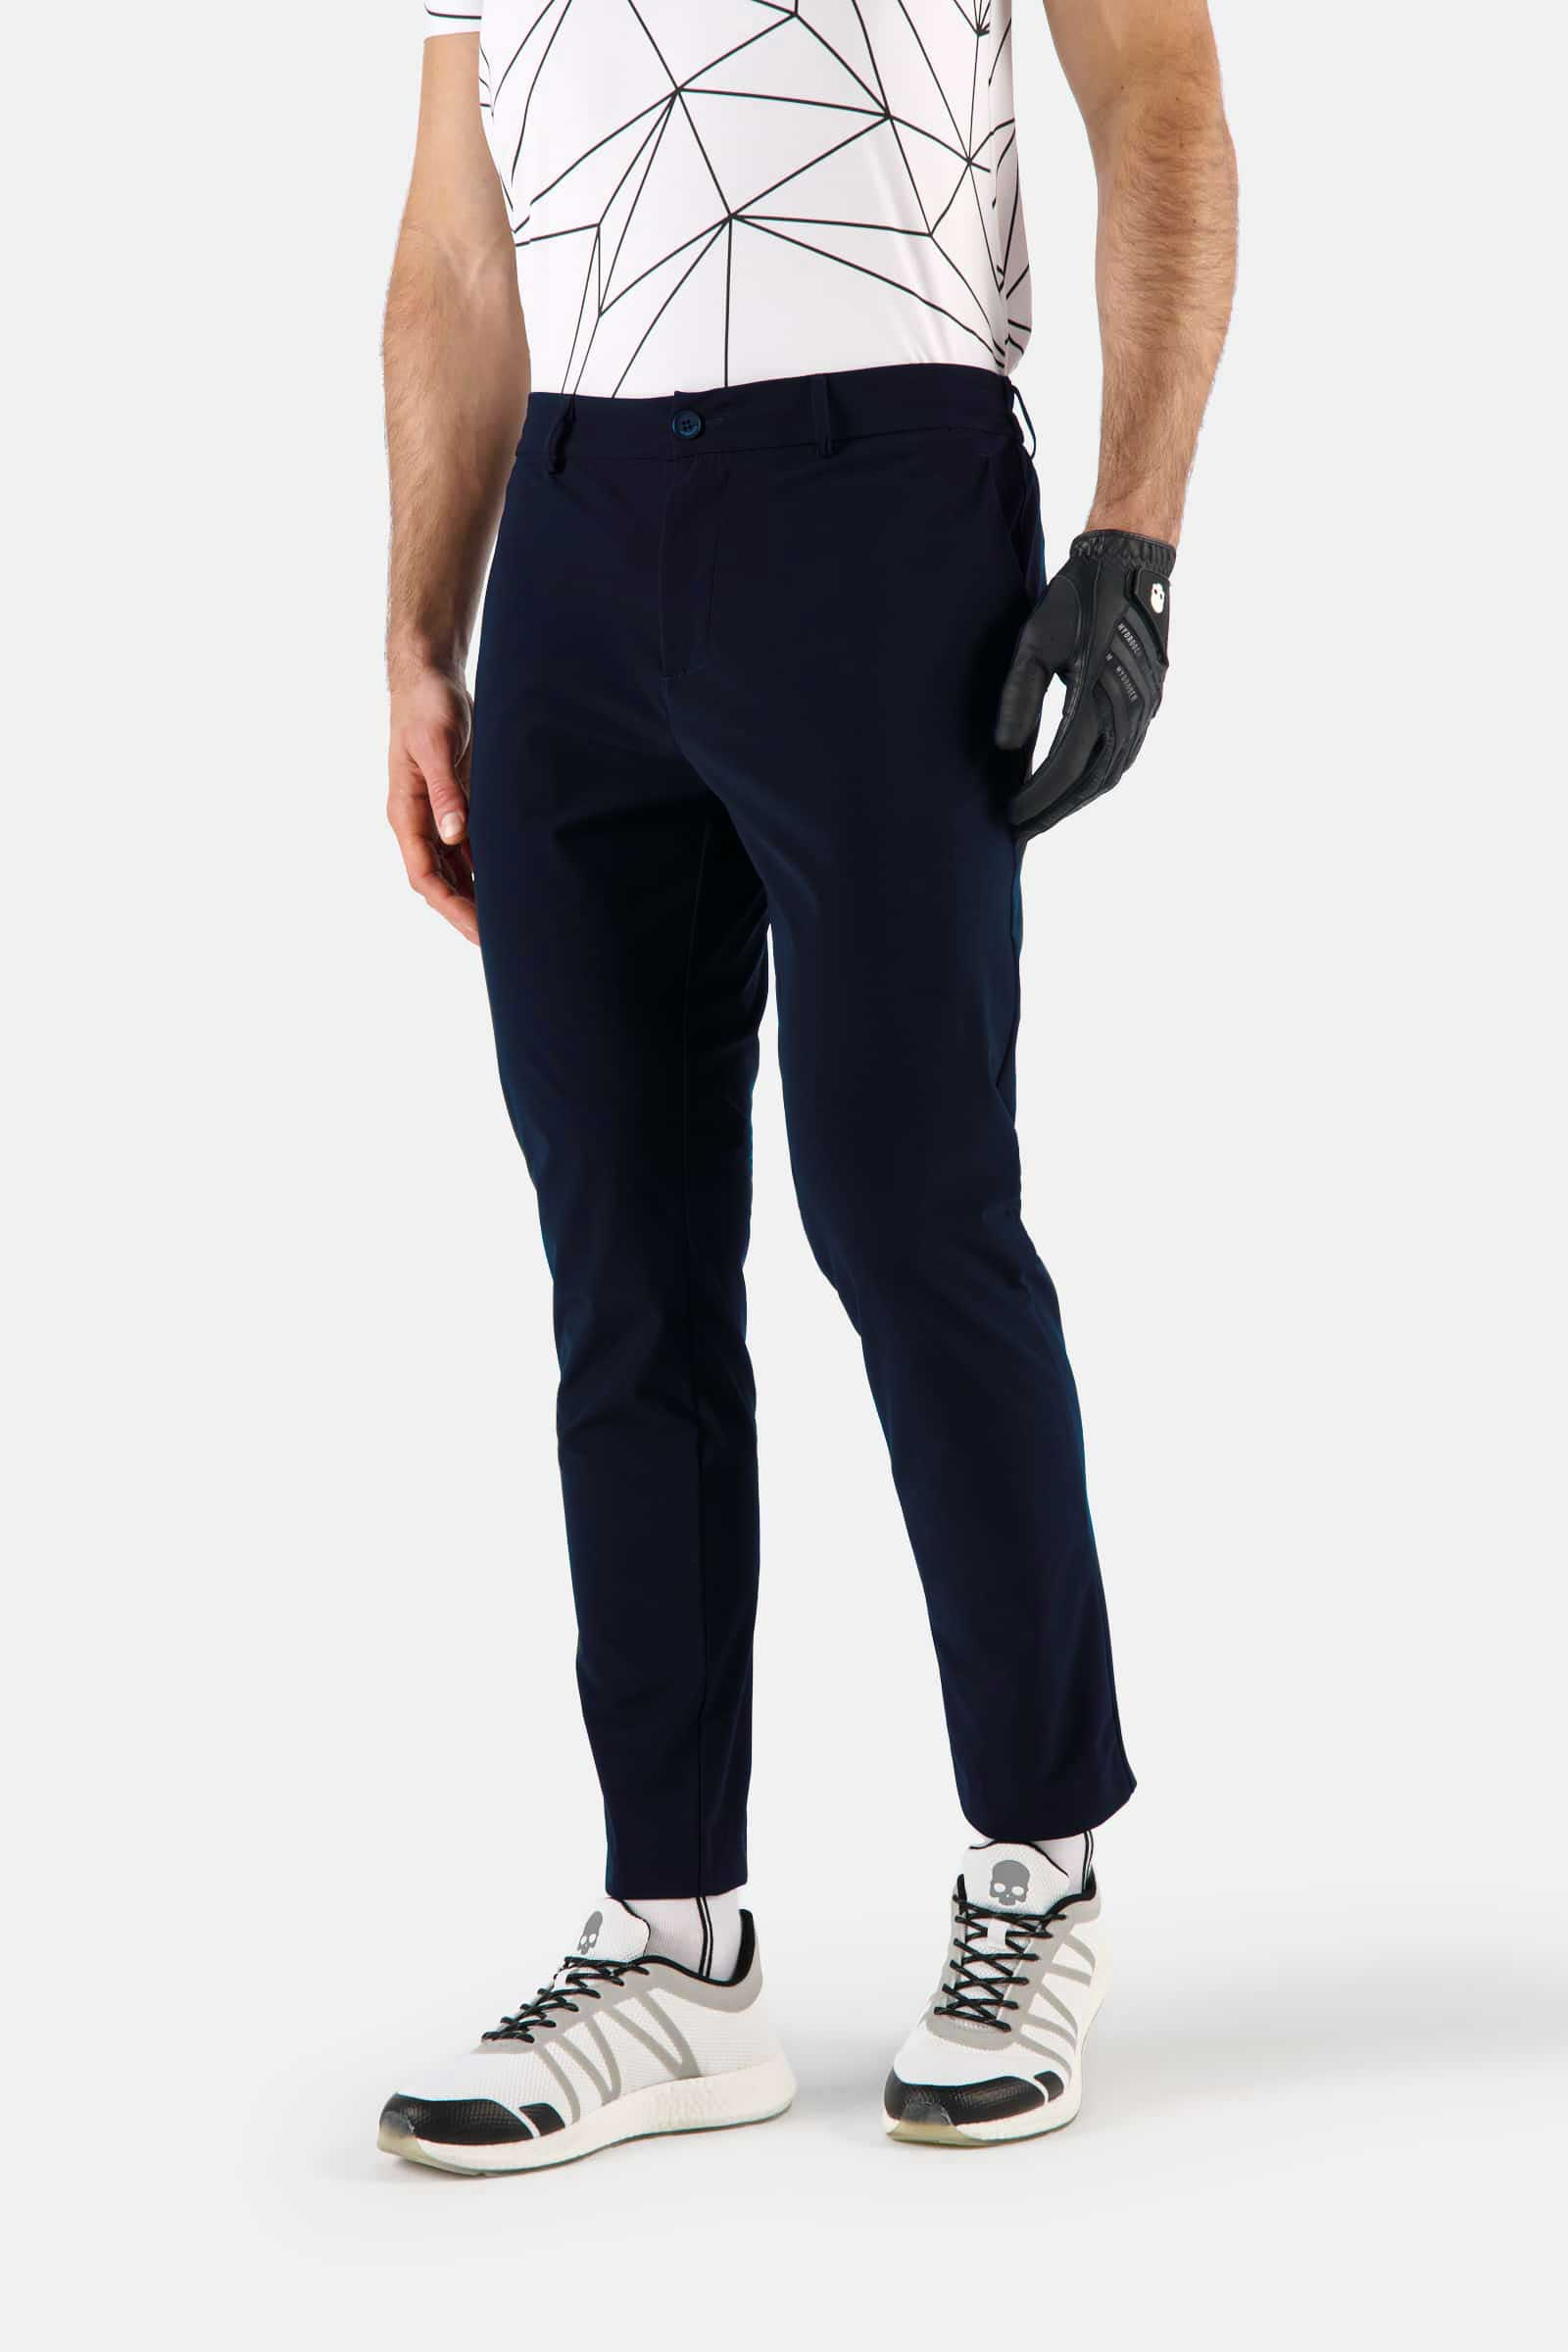 GOLF PANTS - BLUE NAVY - Hydrogen - Luxury Sportwear